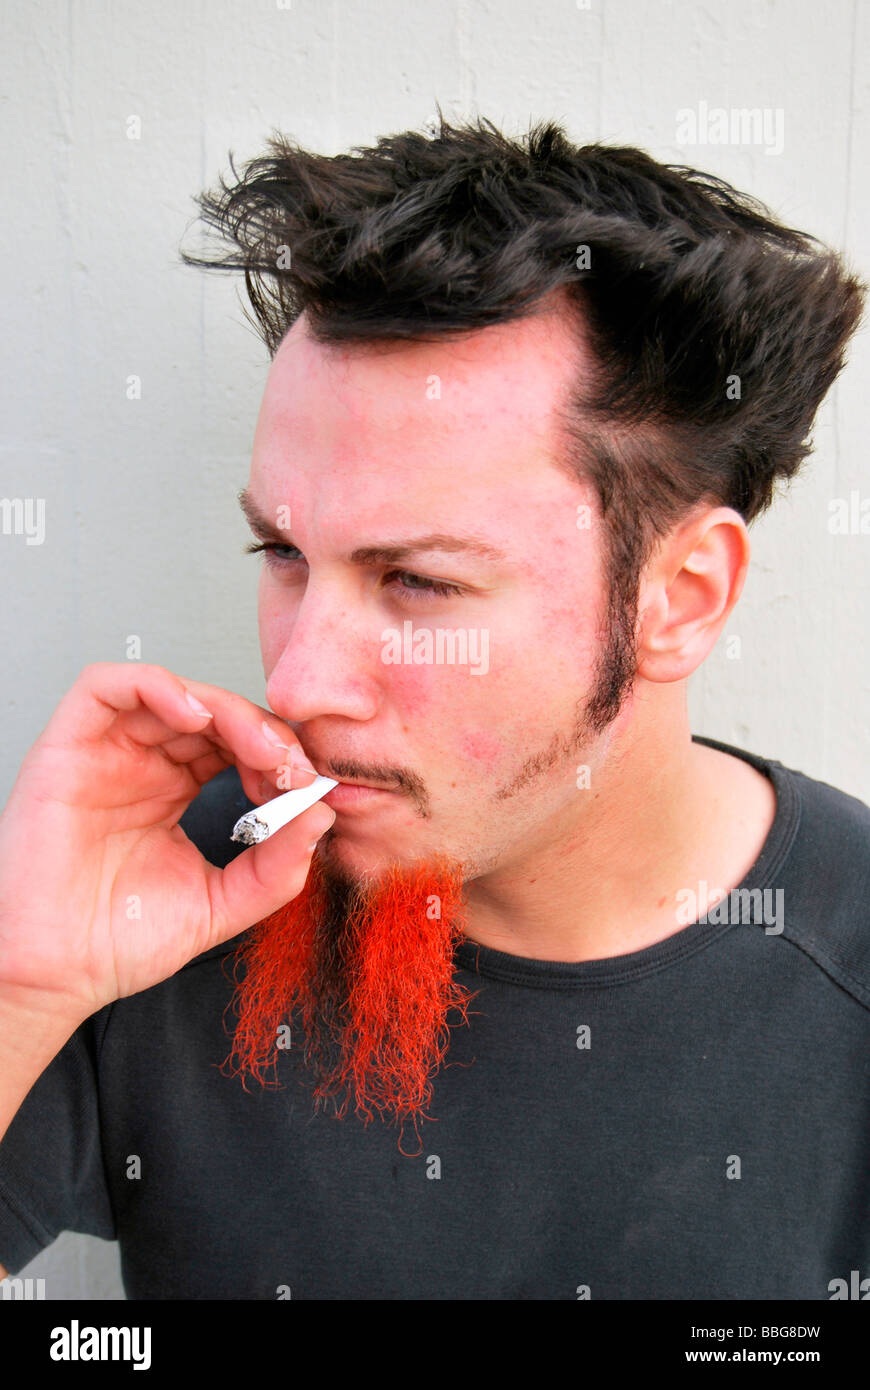 Médicaments, jeune homme avec barbe rouge-noir, fumer un joint, cigarette roulée à la main Banque D'Images